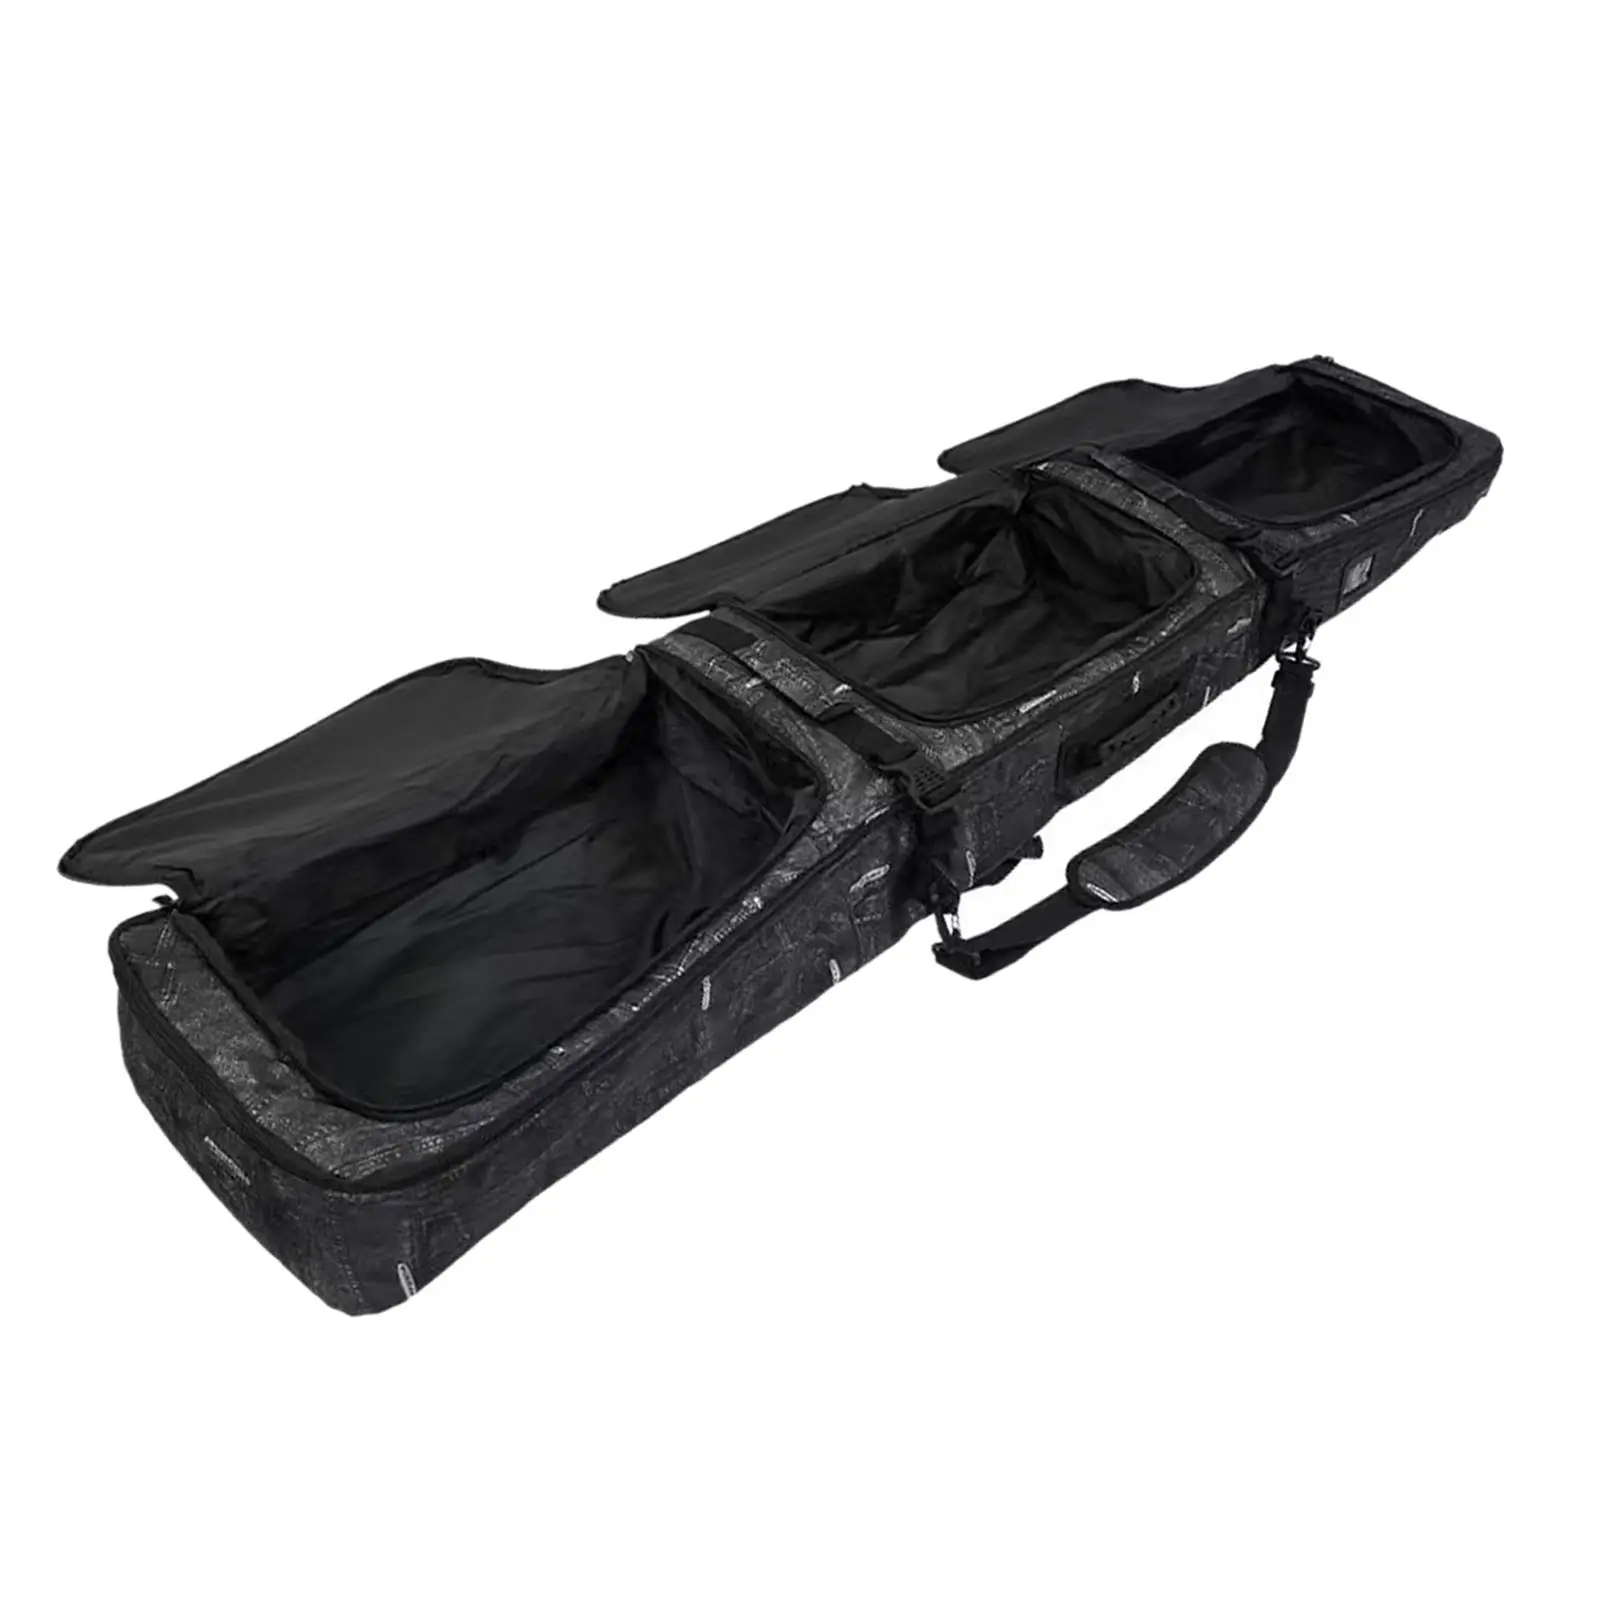 Snowboard Bag with Wheels Adjustable Shoulder Strap Handbag for Air Travel